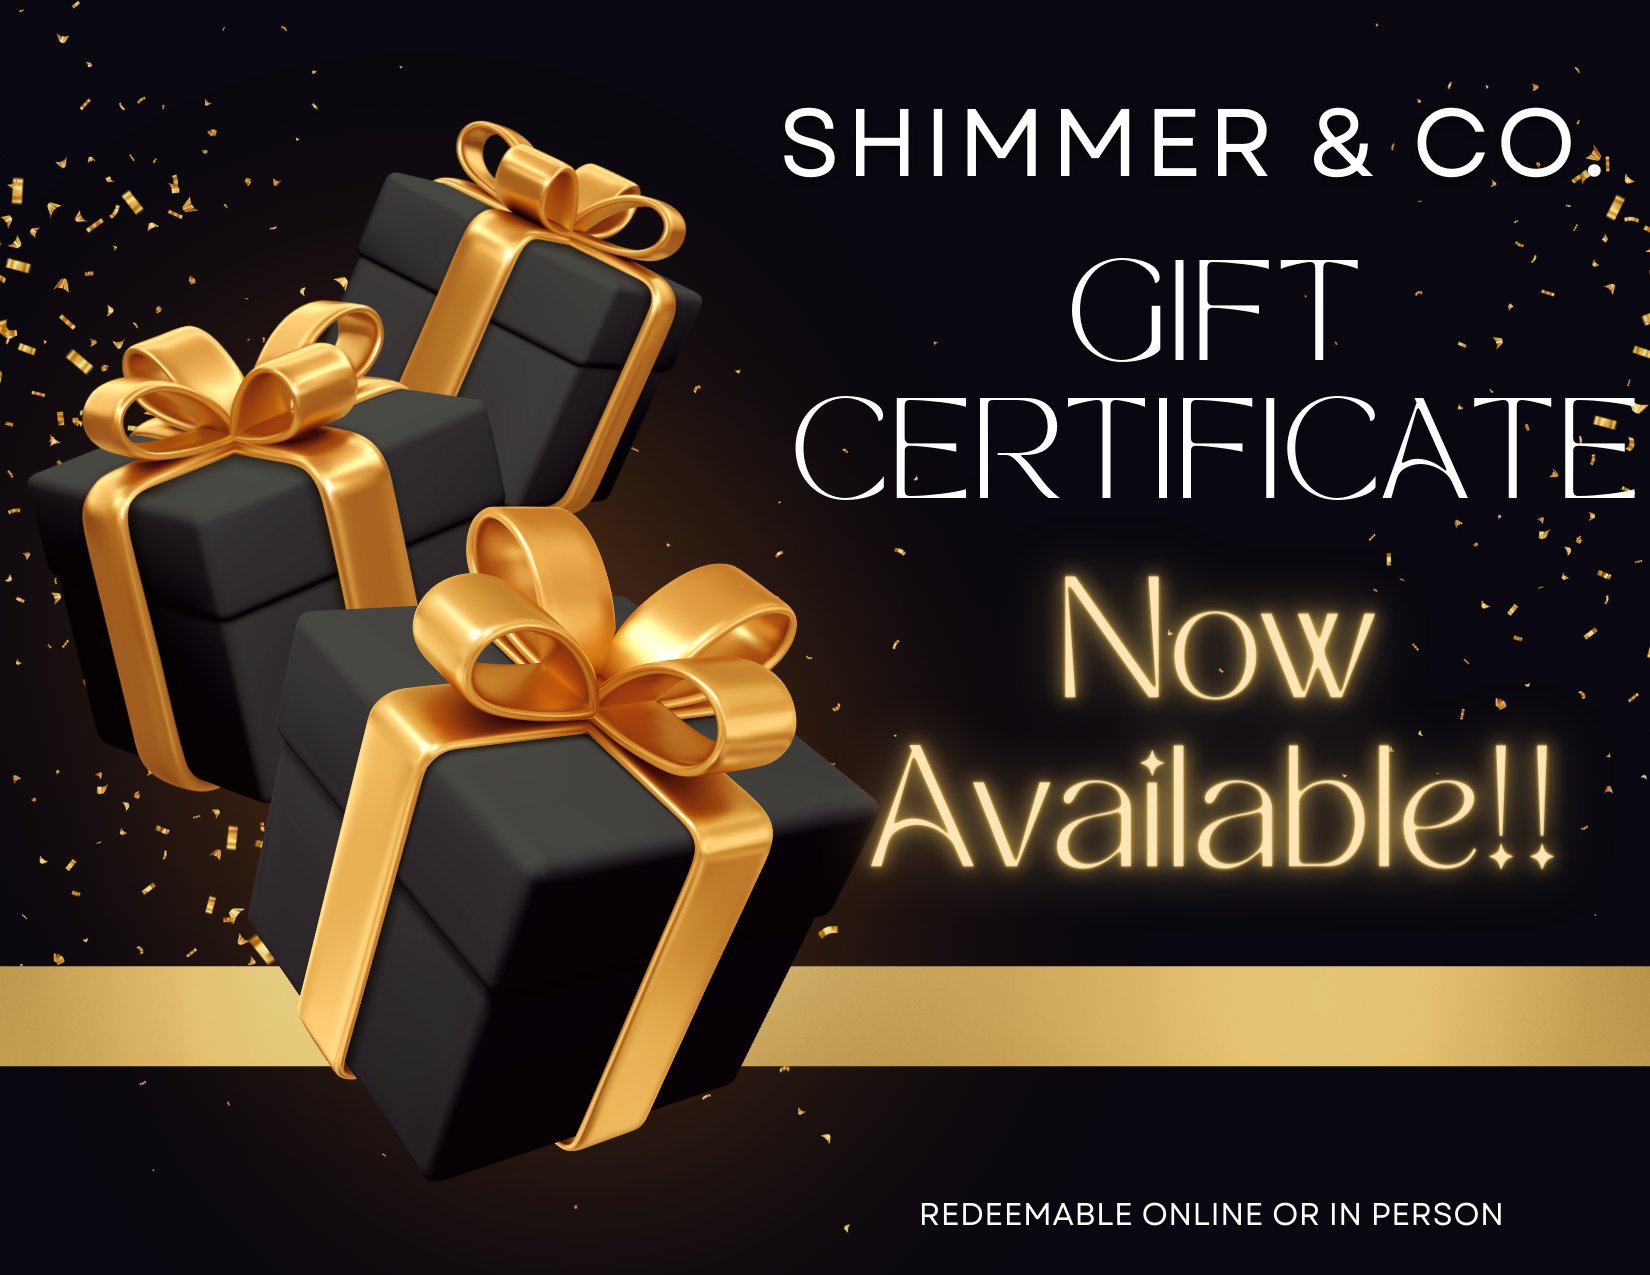 Shimmer & Co. Gift Certificate